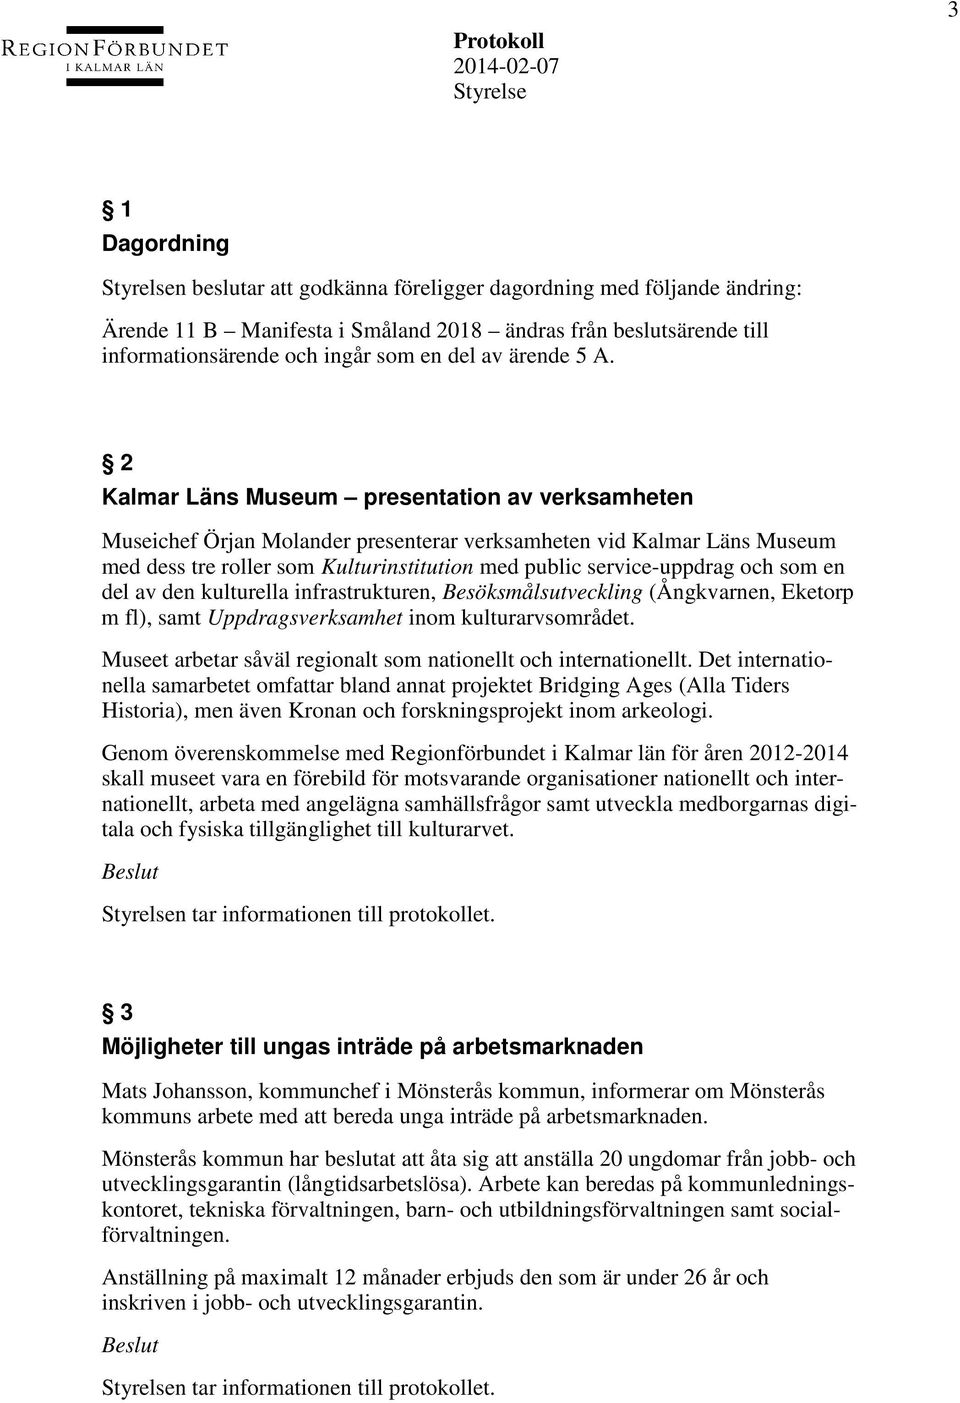 2 Kalmar Läns Museum presentation av verksamheten Museichef Örjan Molander presenterar verksamheten vid Kalmar Läns Museum med dess tre roller som Kulturinstitution med public service-uppdrag och som